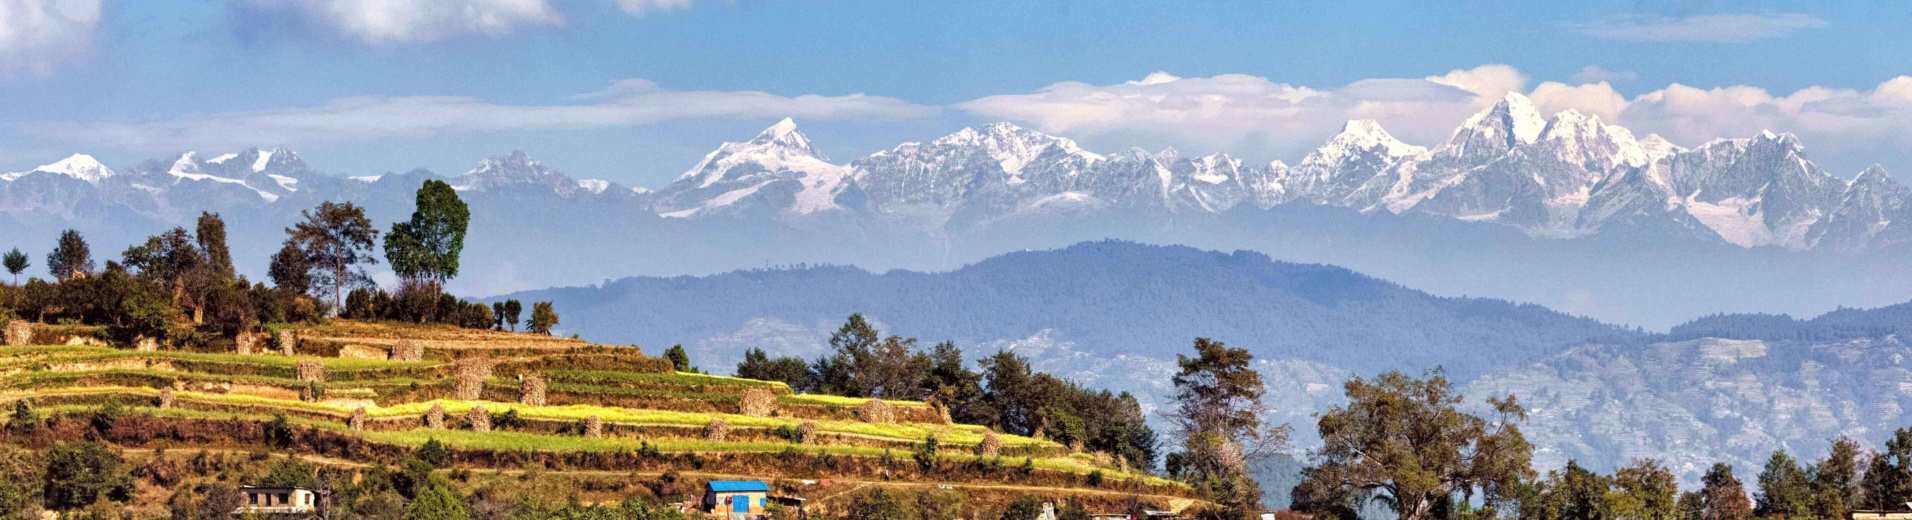 Rizières et sommets enneigés, Népal